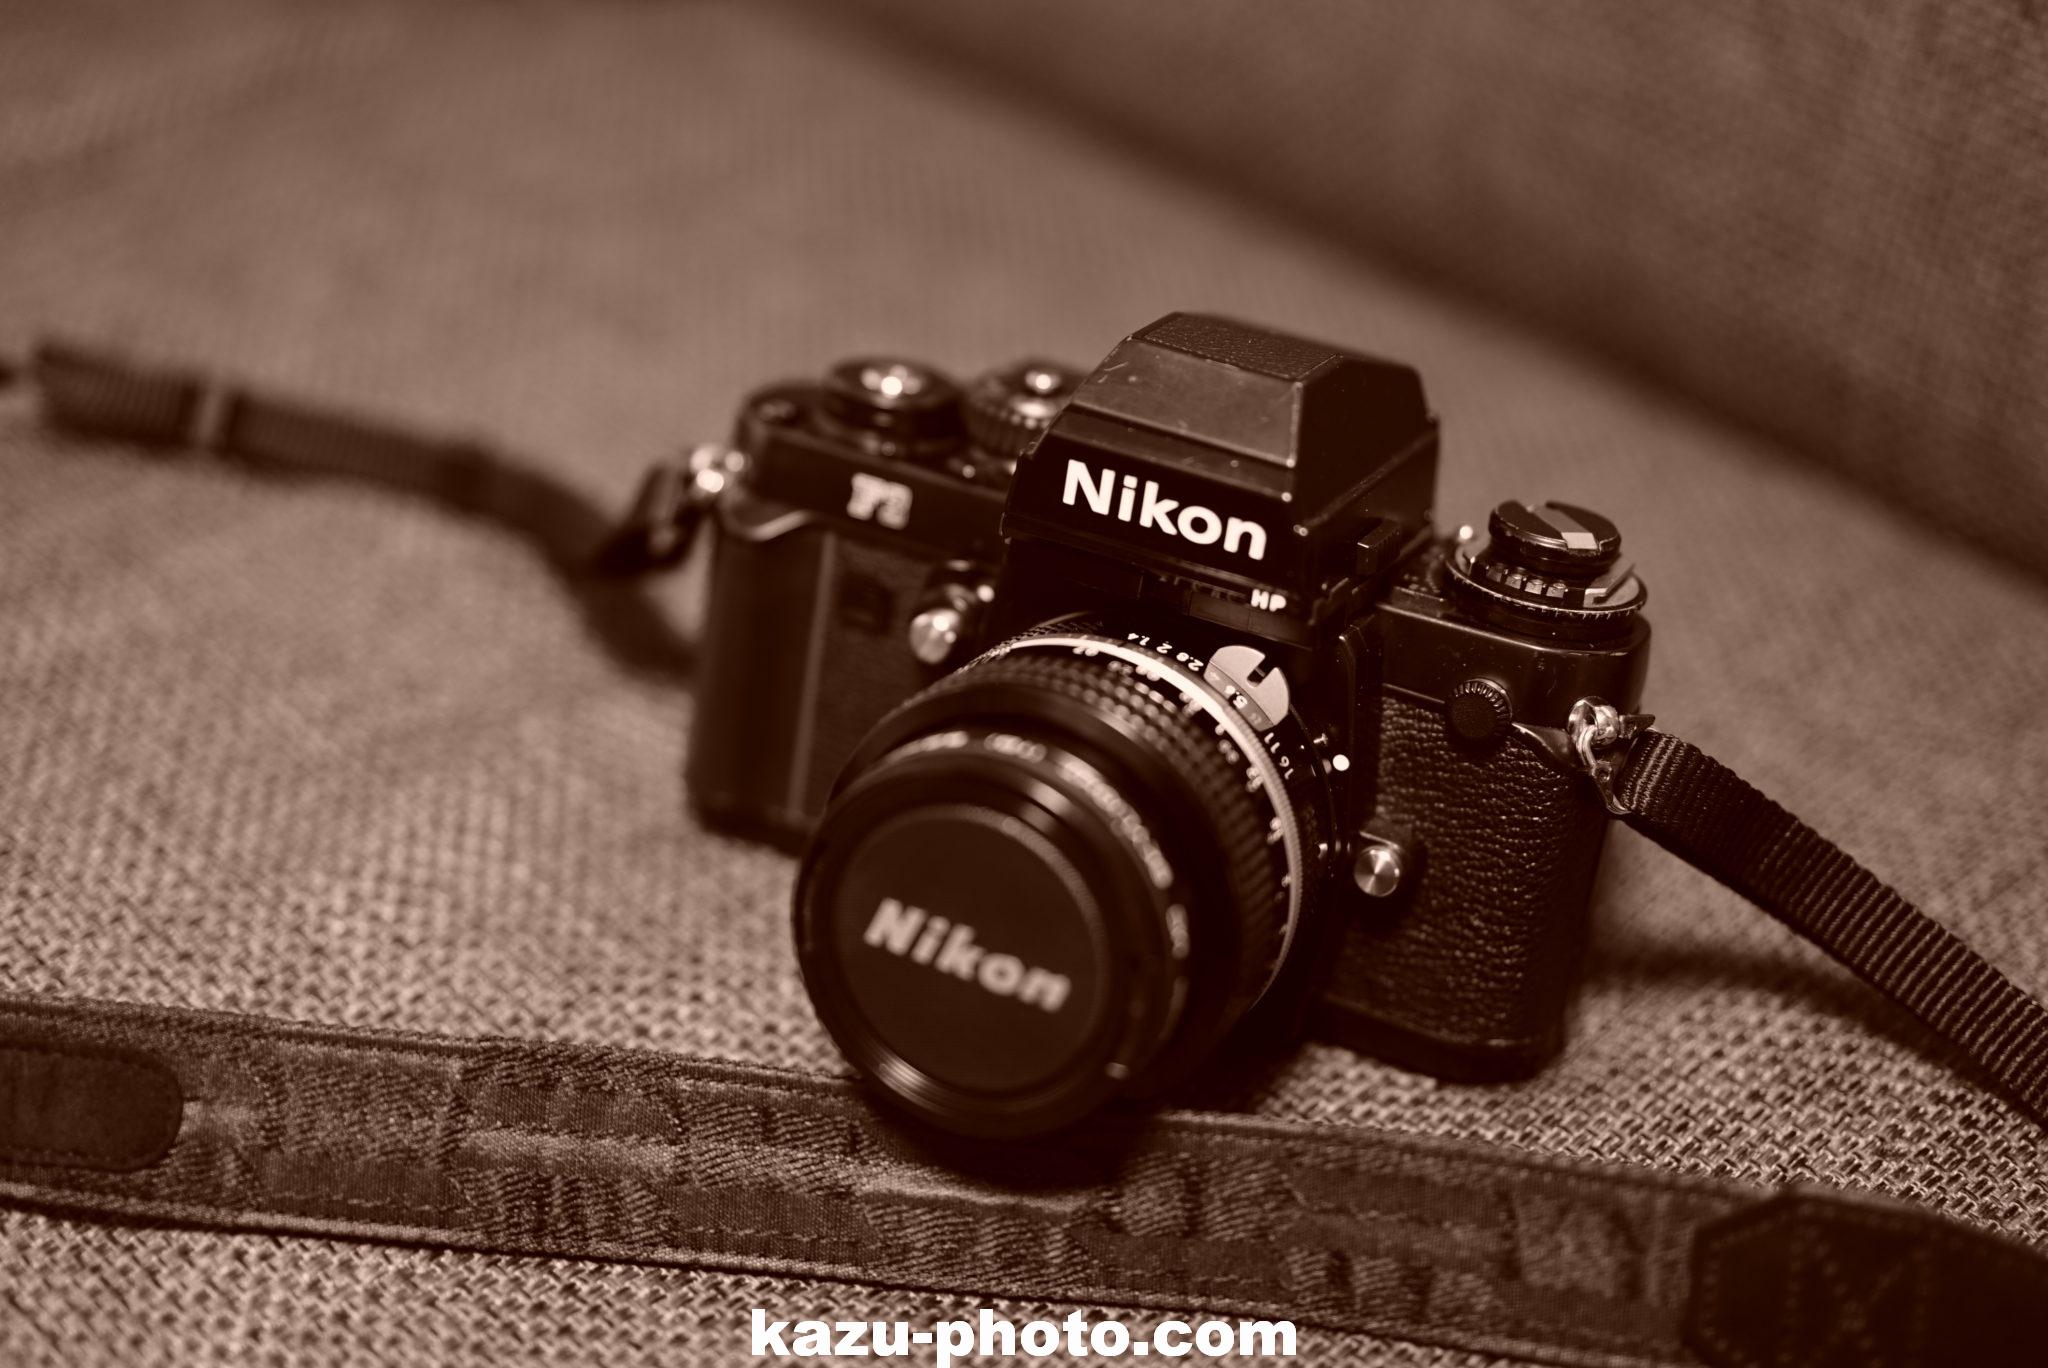 日本国内正規品 Nikon F3 HP レンズセット フィルムカメラ